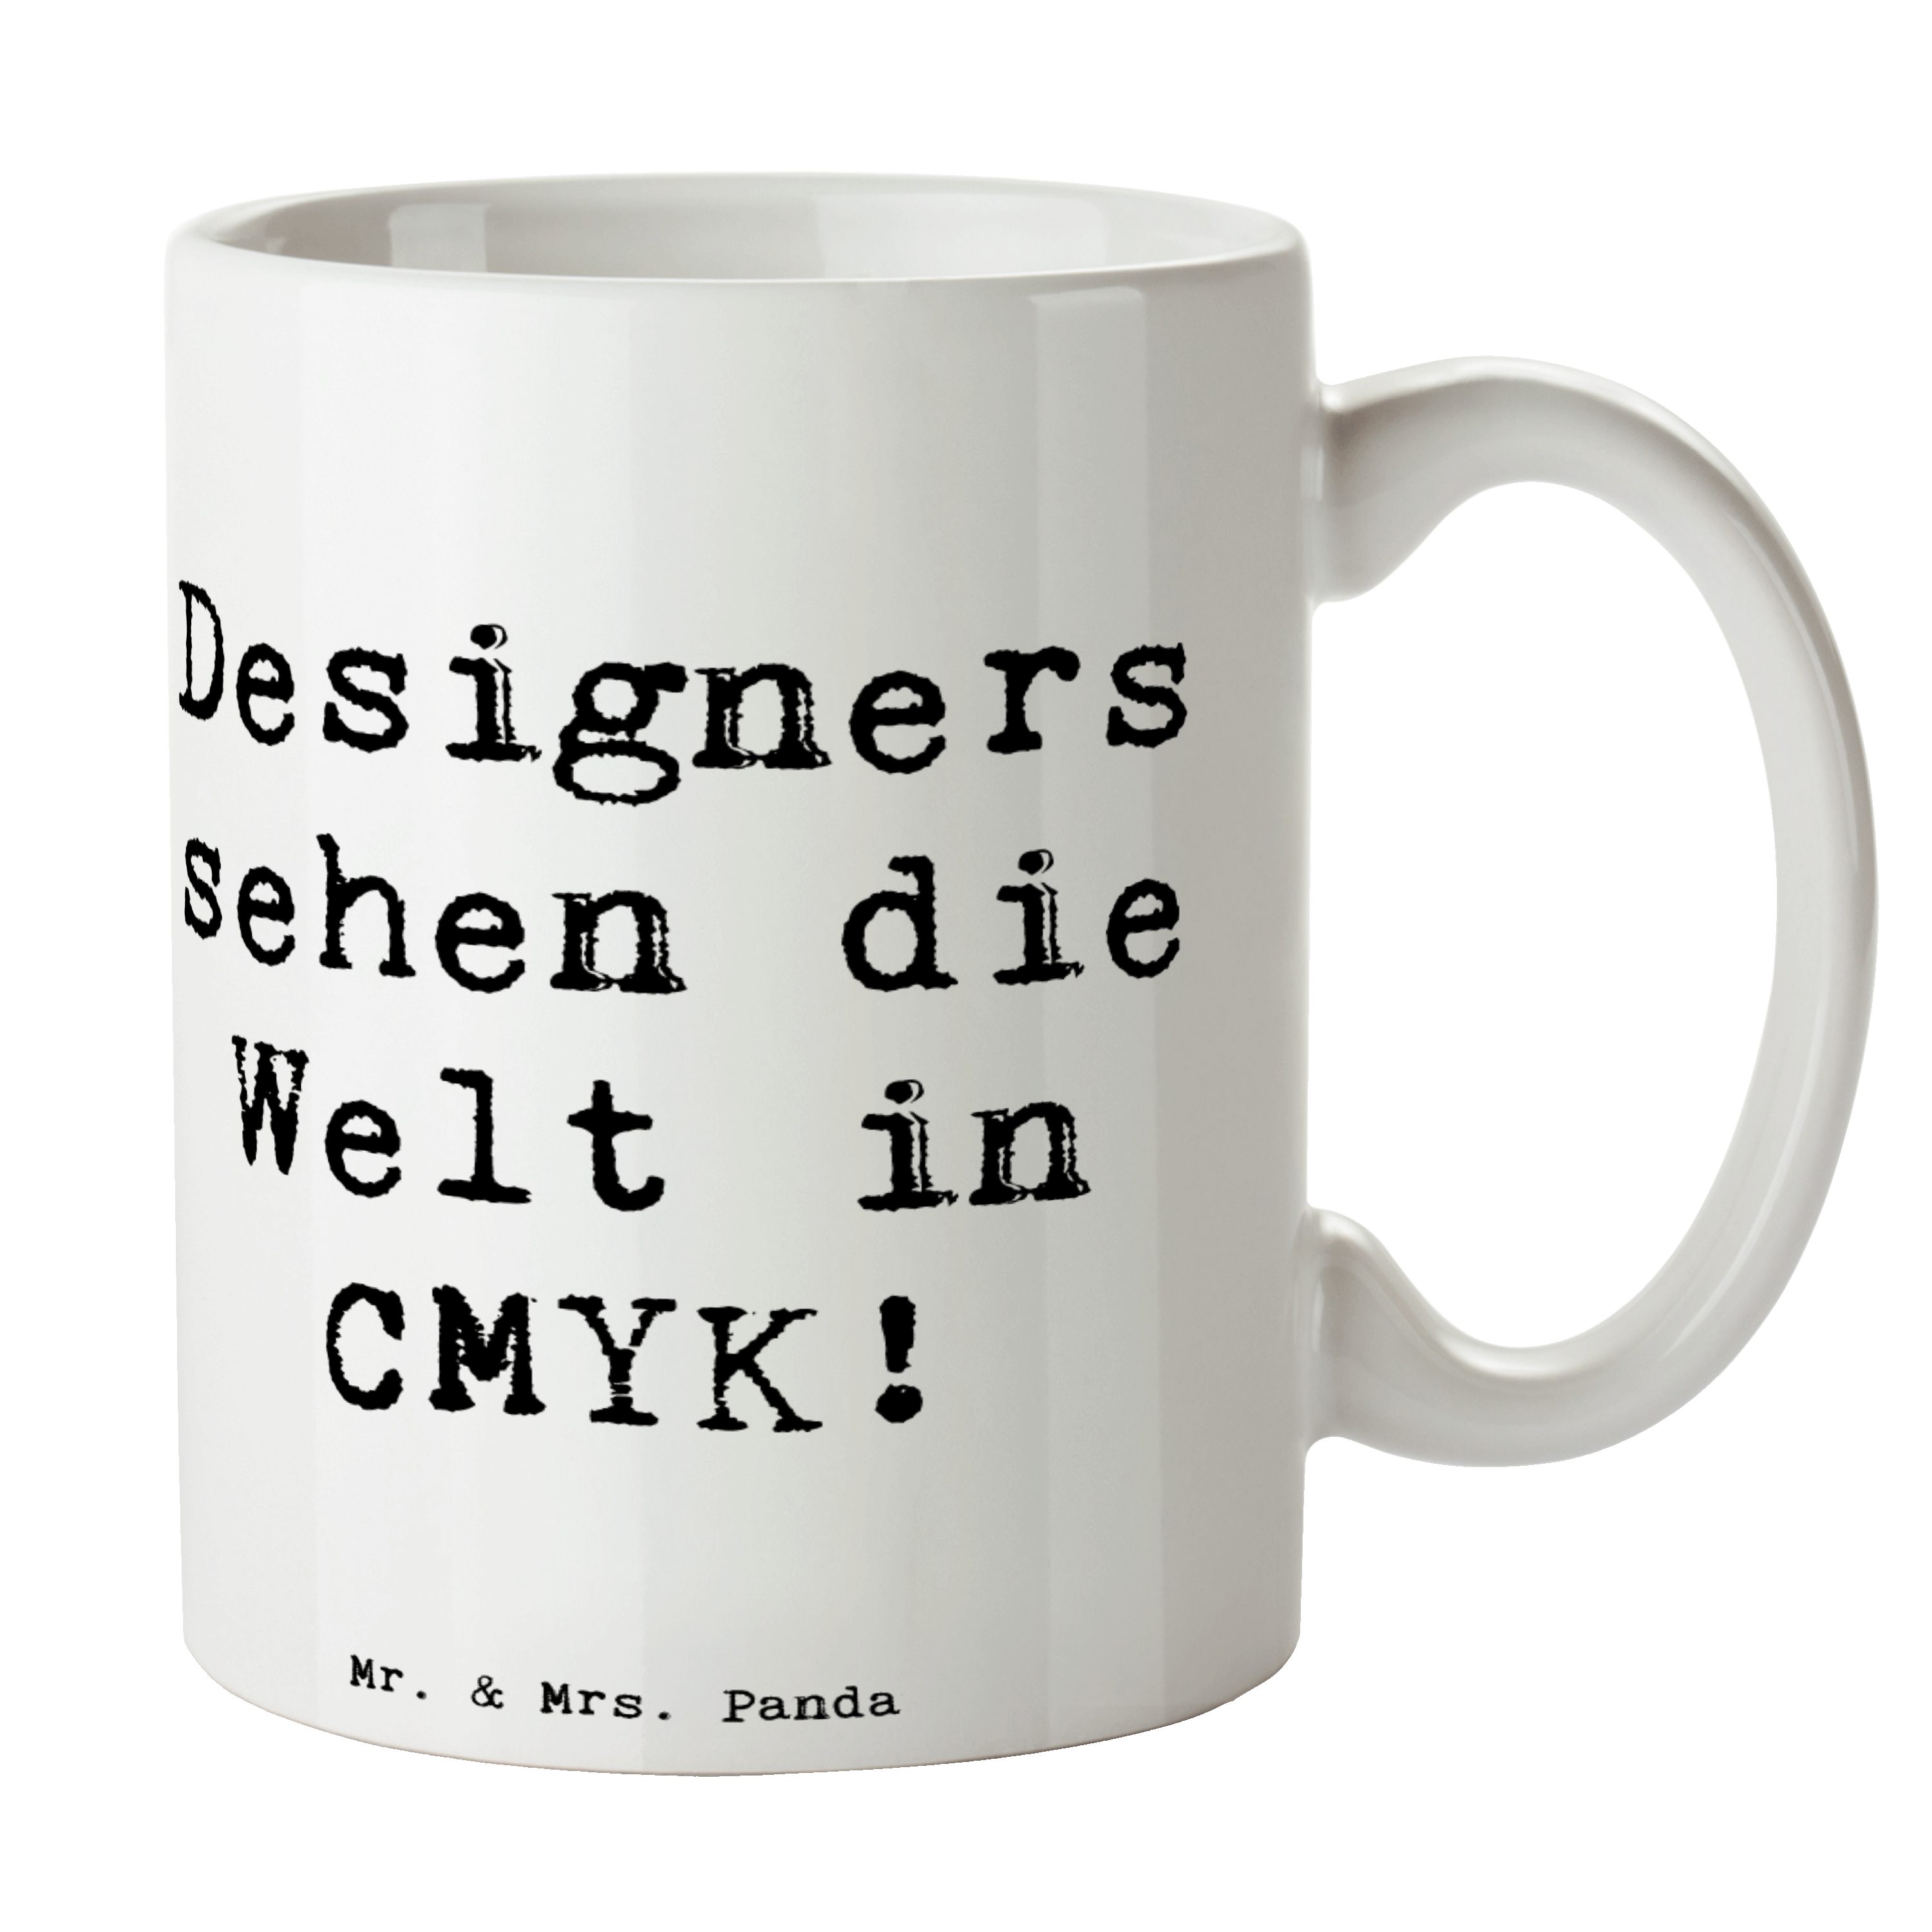 Mr. & Mrs. Panda Tasse Designers sehen die Welt in CMYK! - Weiß - Geschenk, Kaffeebecher, Ko, Keramik, Langlebige Designs